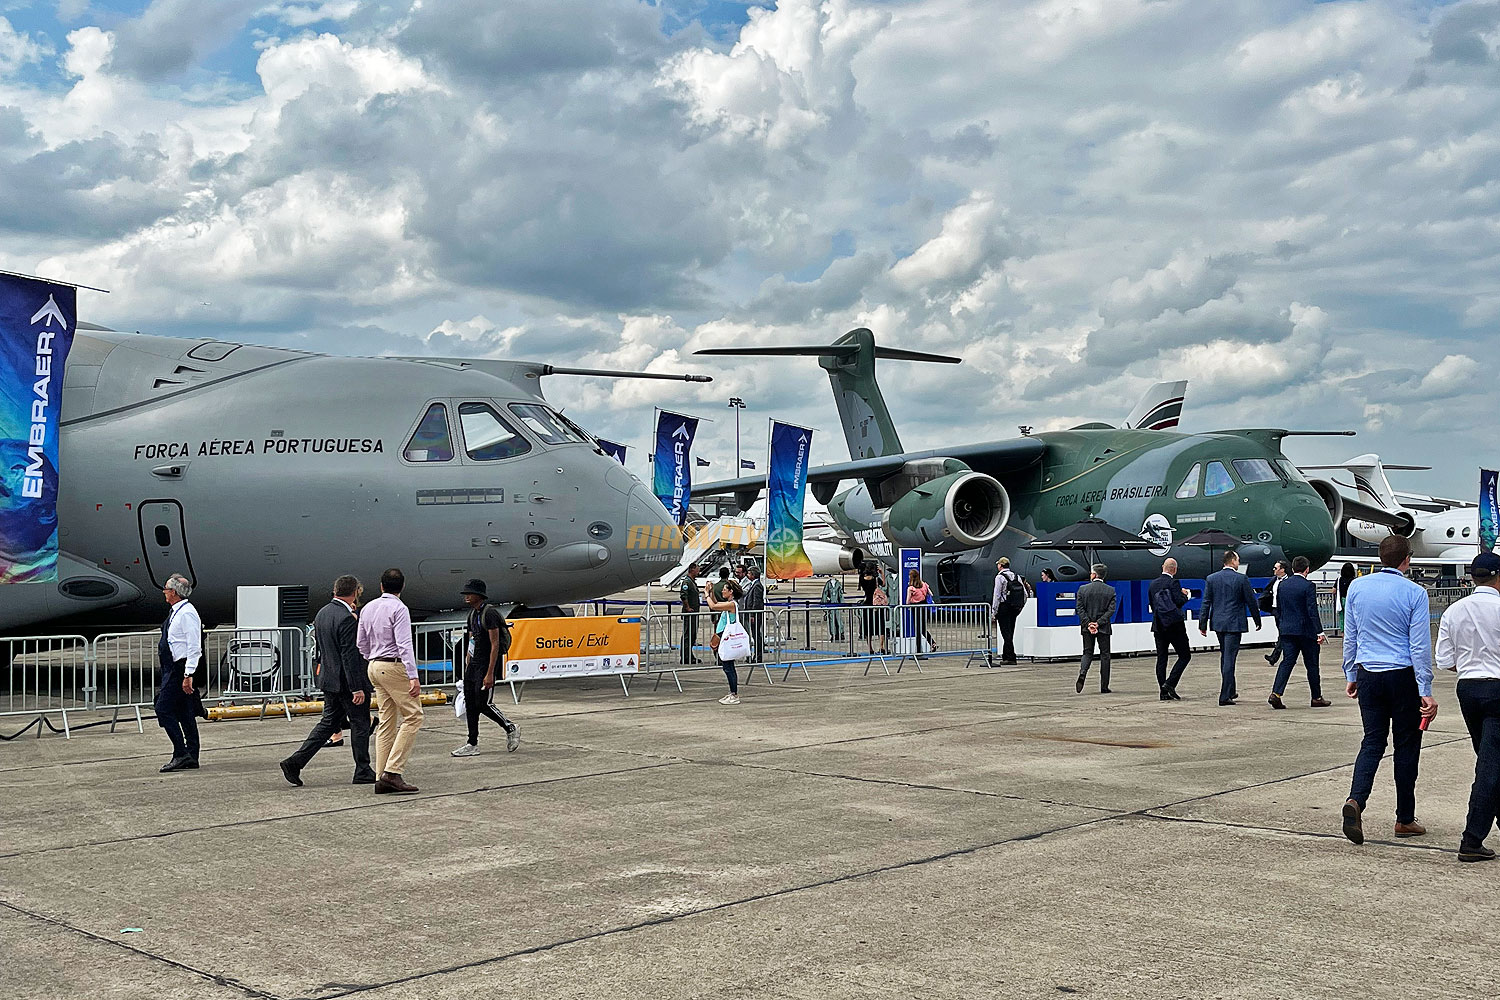 Quantos KC-390 a Embraer pode vender a países interessados no maior avião  brasileiro? - Airway